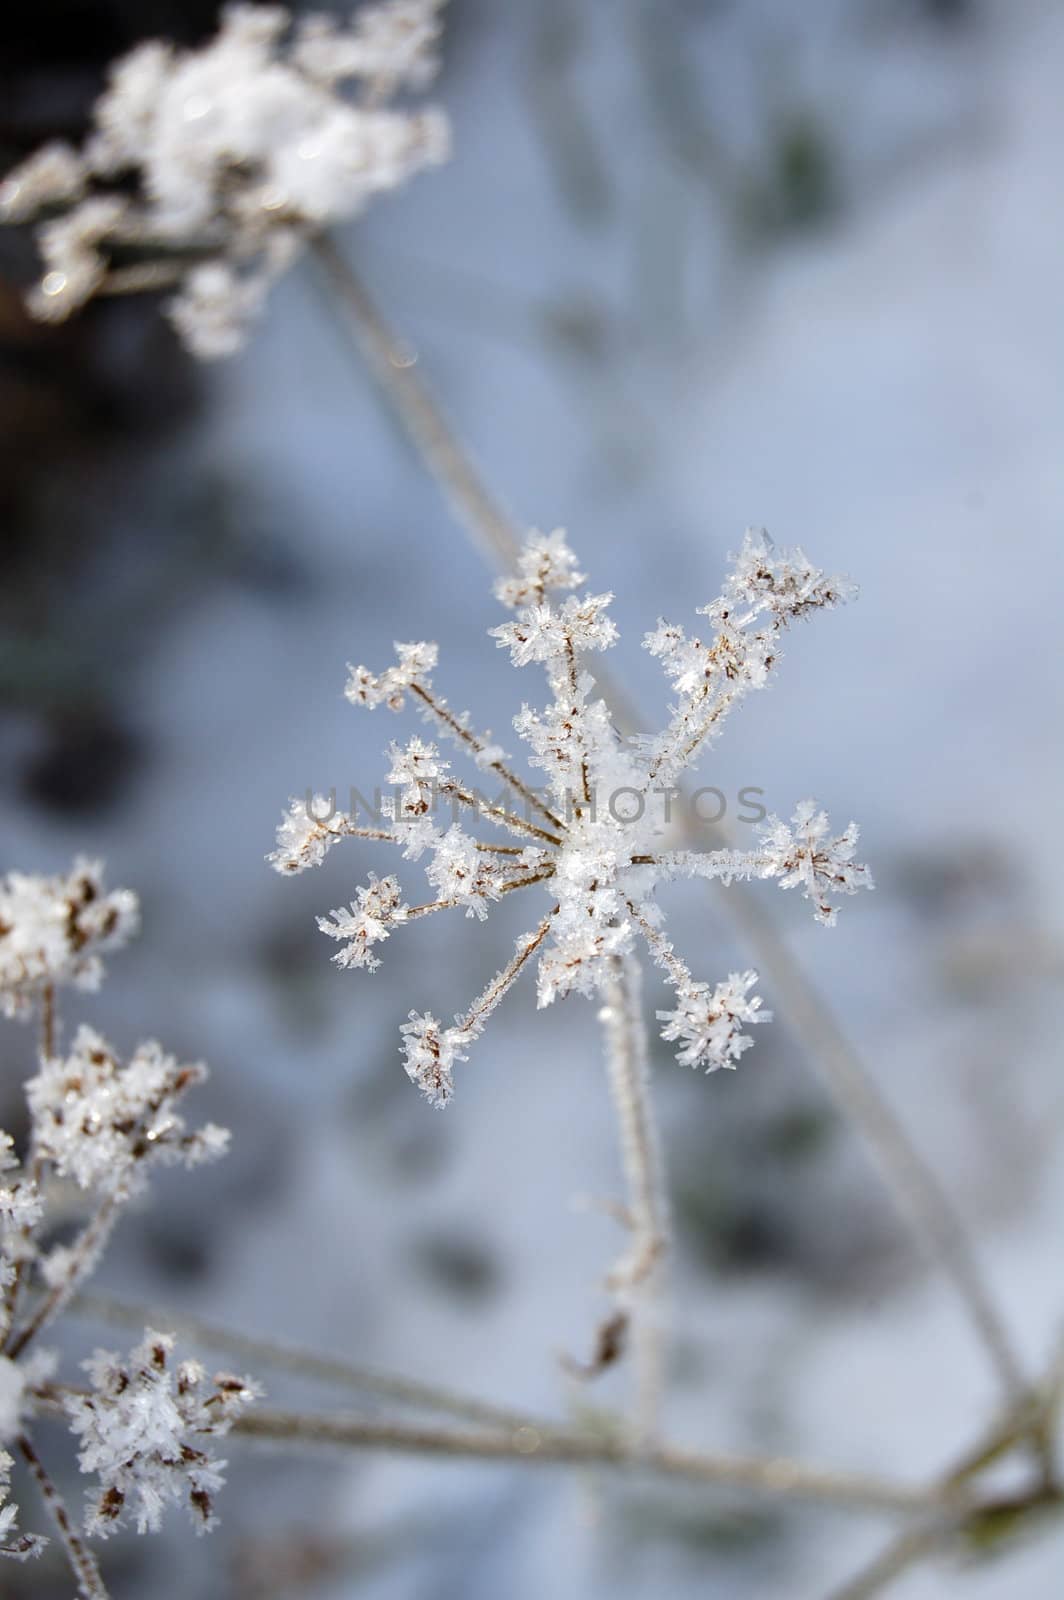 frosty vegetation